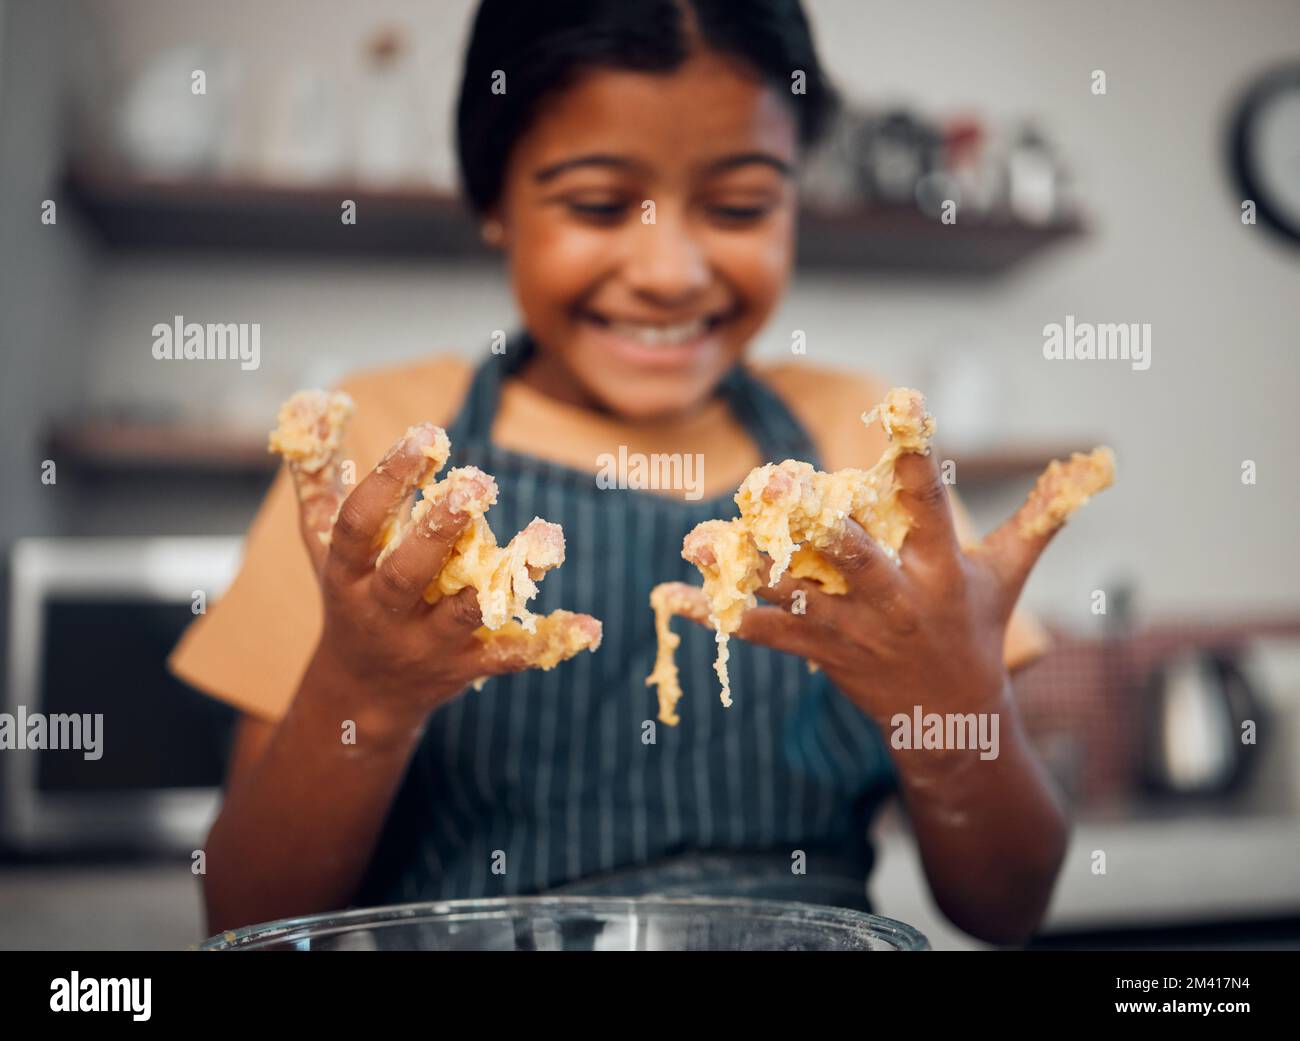 Mädchen, Hände und Knete beim Kochen in der Küche. Backen, Aufklärung und fröhlicher Kinderkoch mit Schüssel und Mehl, lächelnd und köstlich Stockfoto